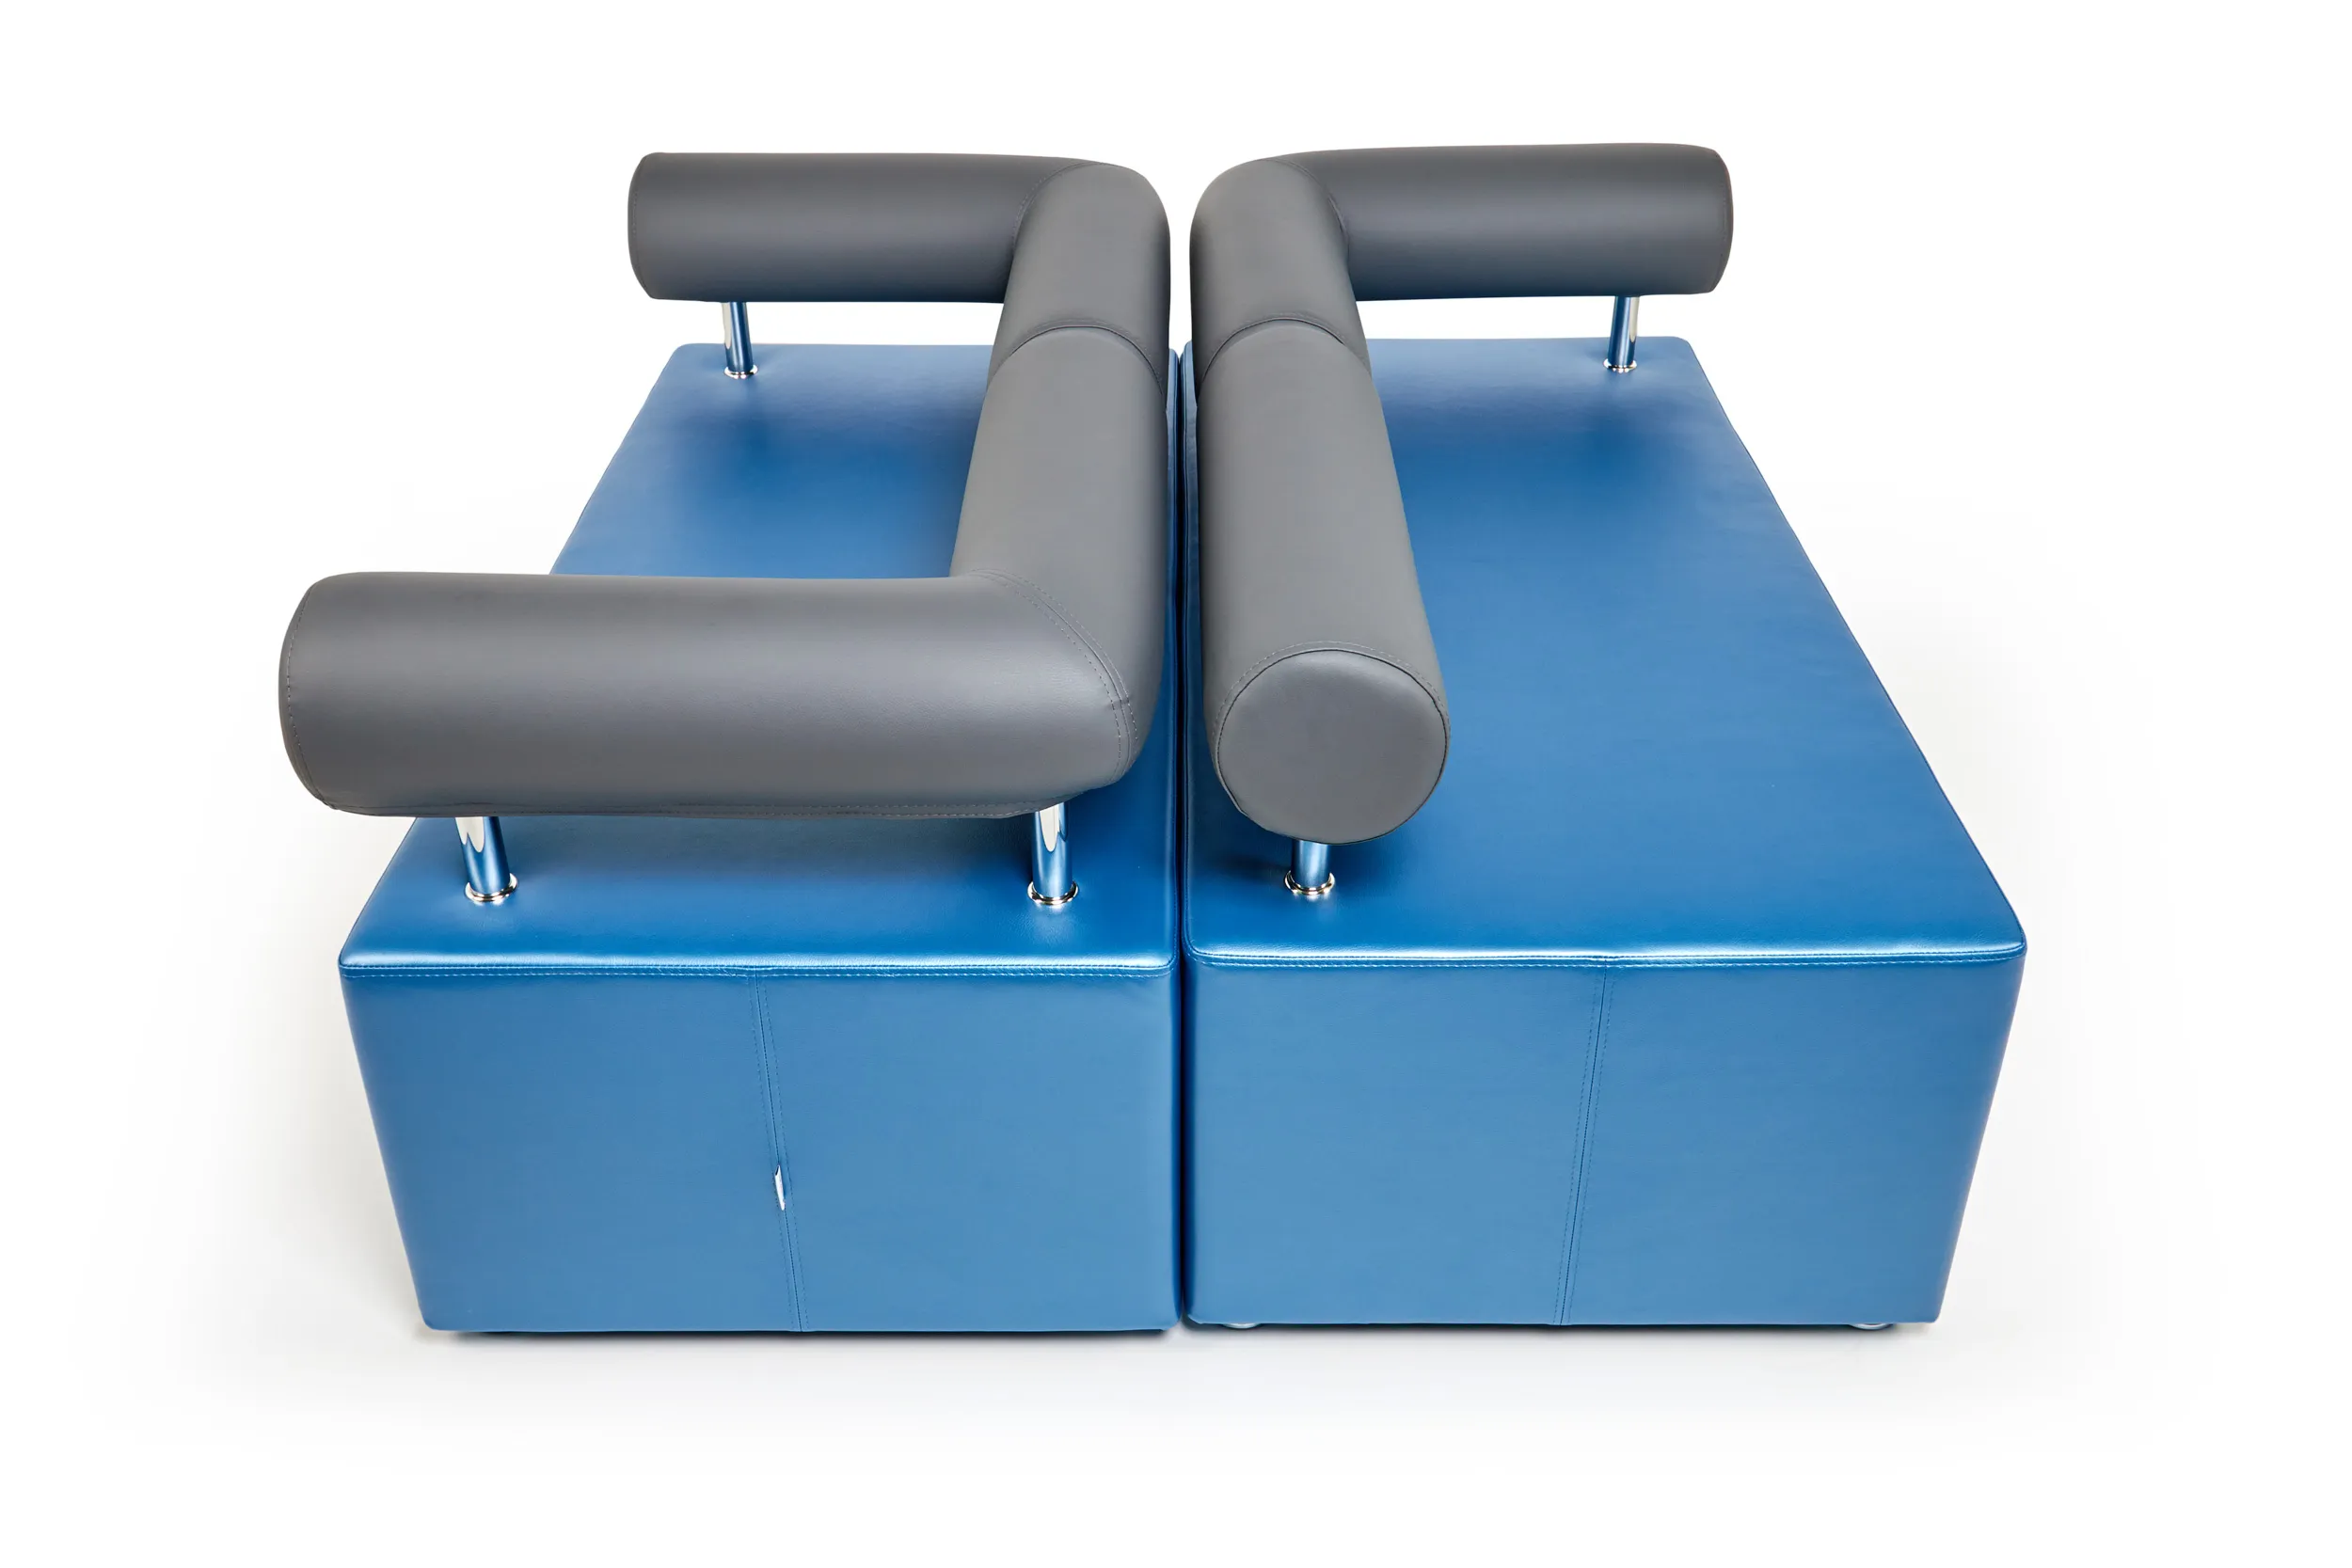 Модульный диван для зоны ожидания toForm М1 Comfort solutions